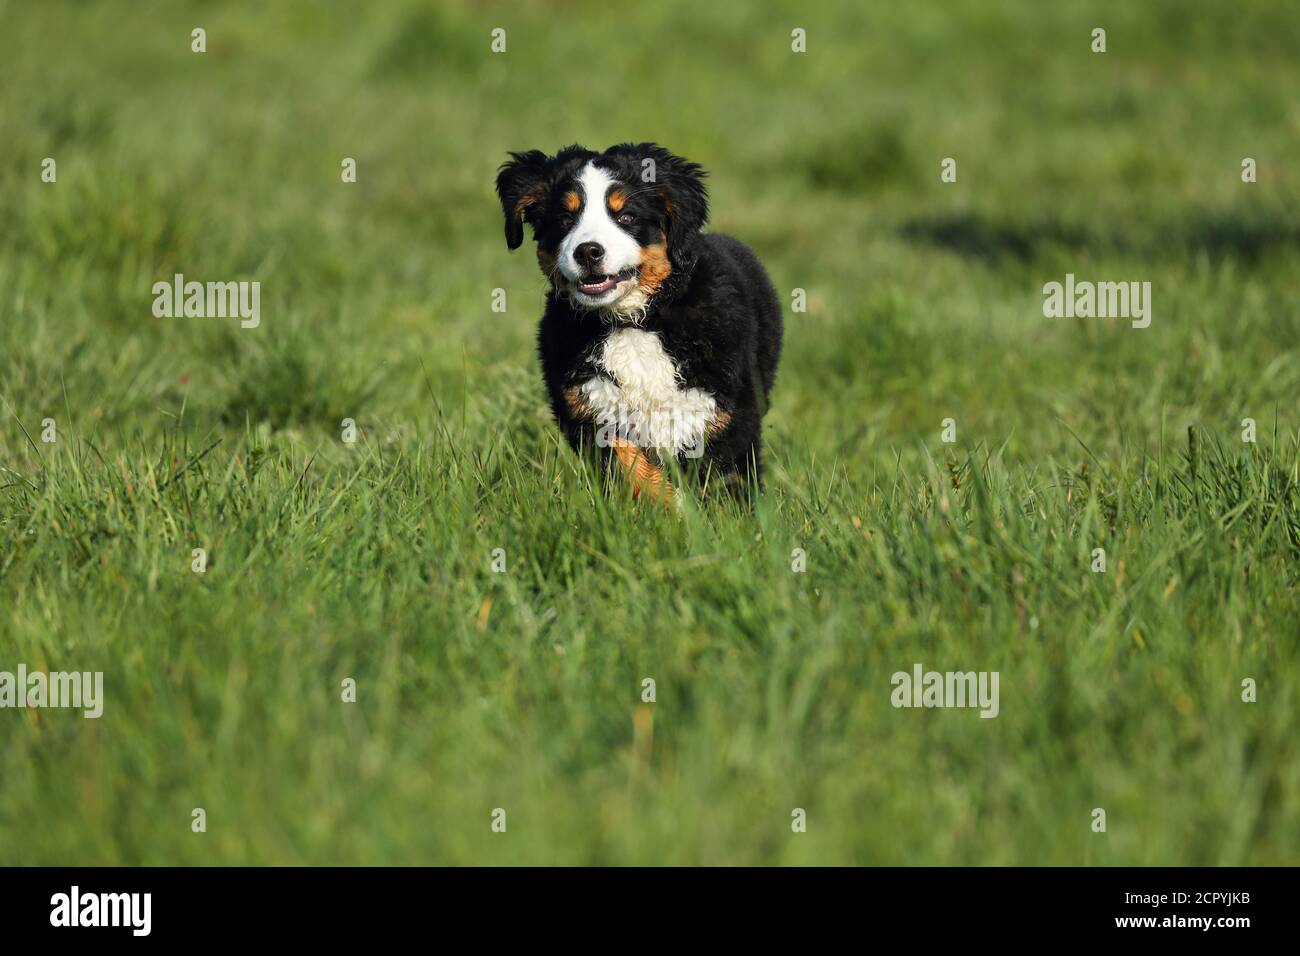 Bernese Mountain Dog runs across a meadow Stock Photo